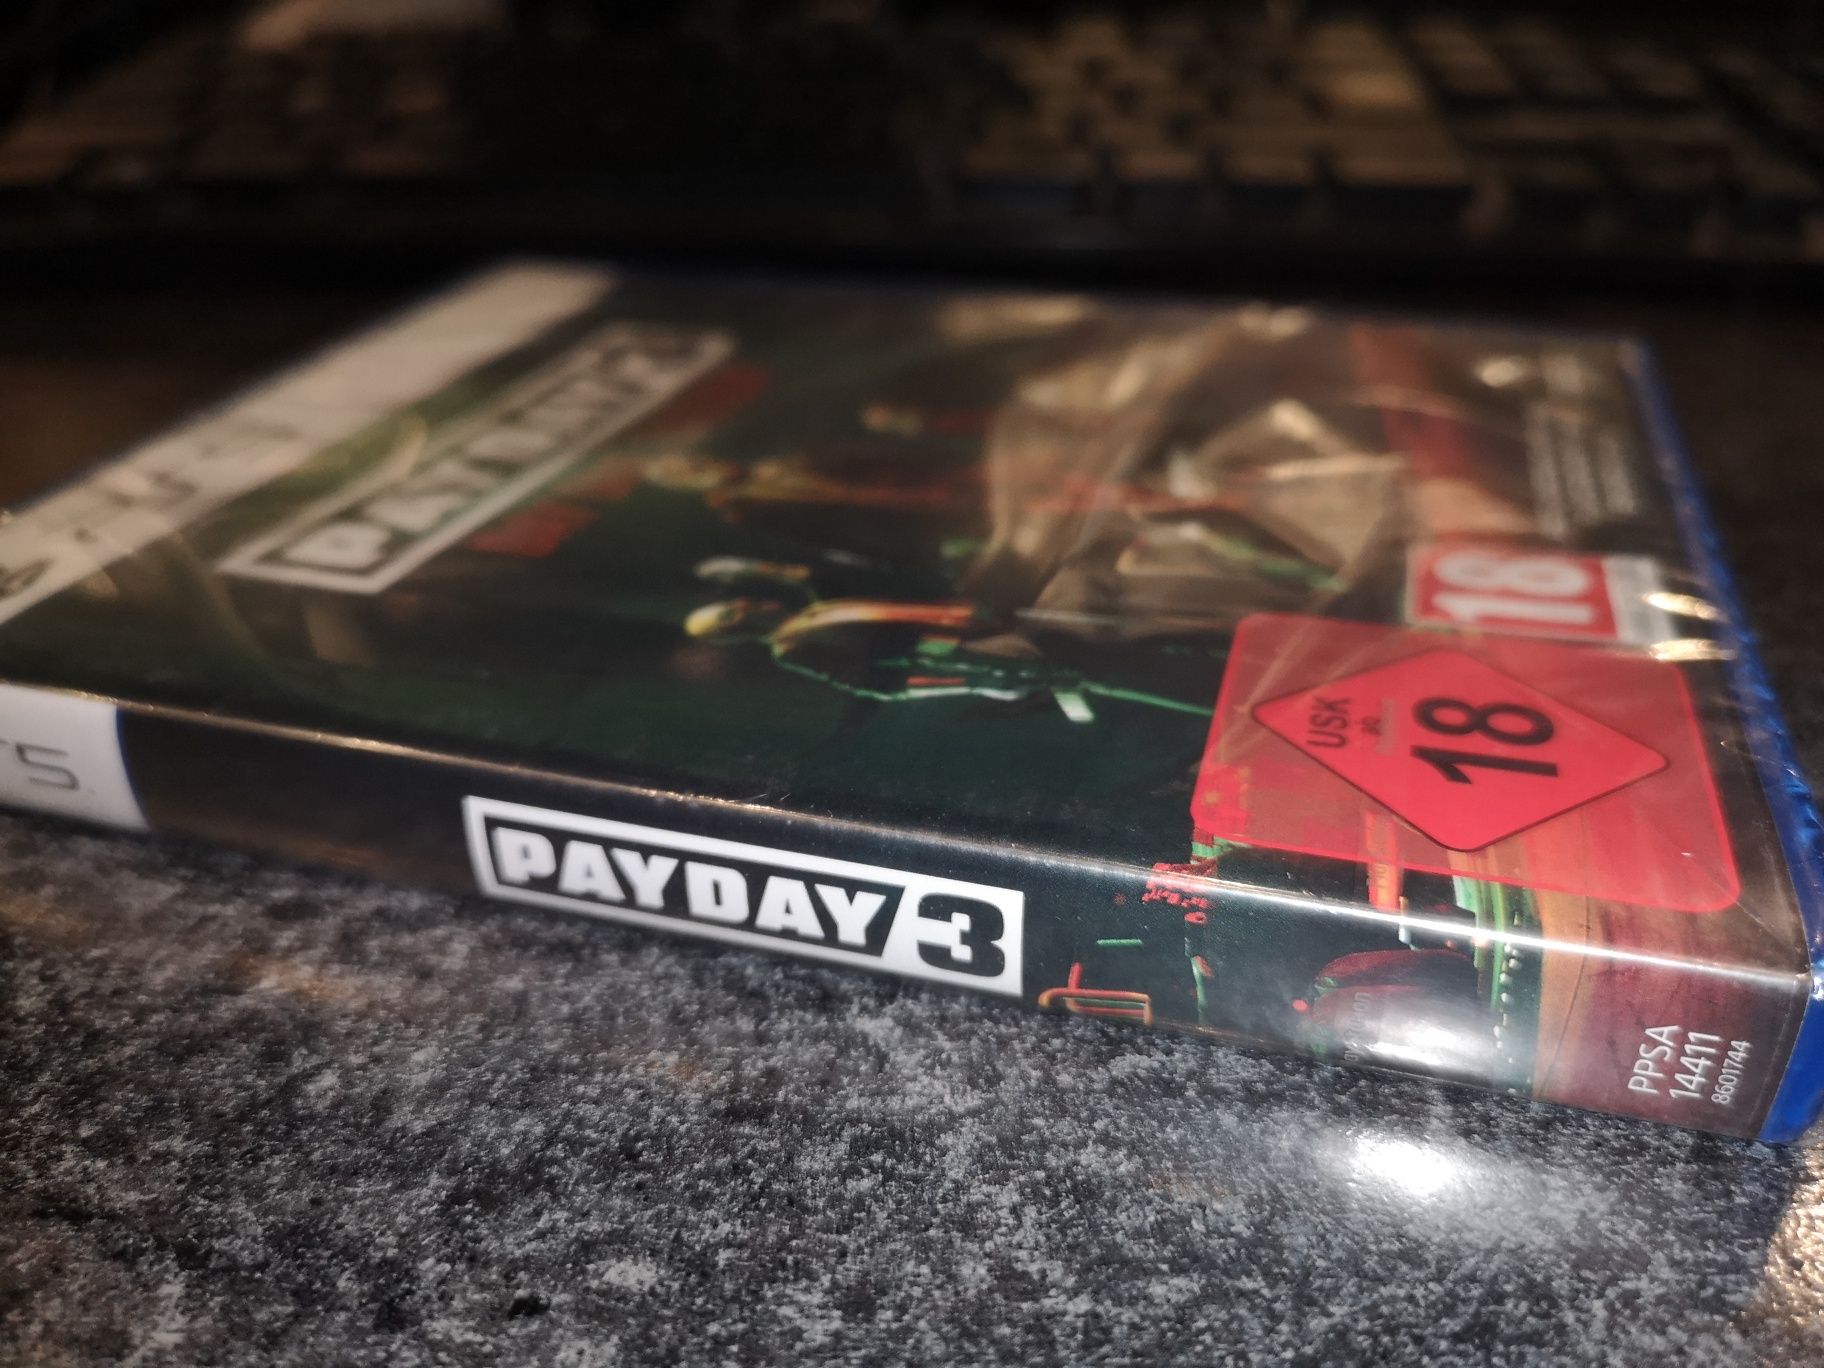 Payday 3 PS5 gra PL (nowa w folii) sklep Ursus kioskzgrami